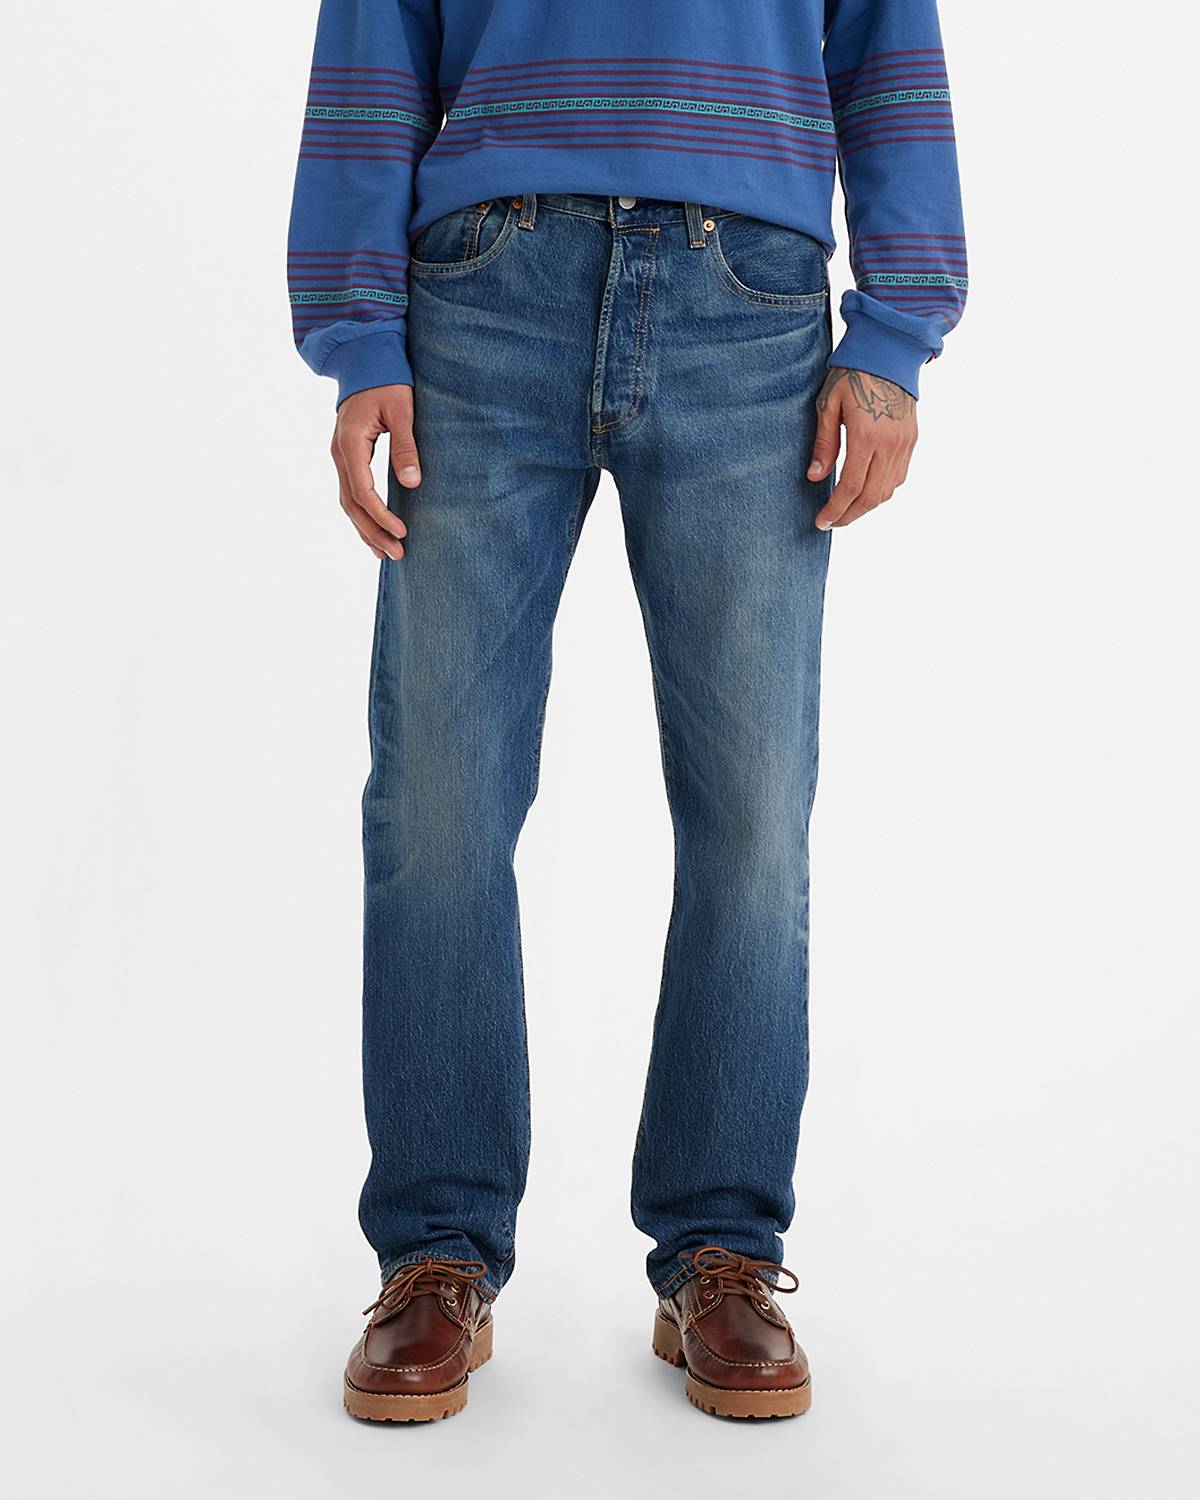 Men's 501® Jeans - Shop 501® Original Fit Jeans